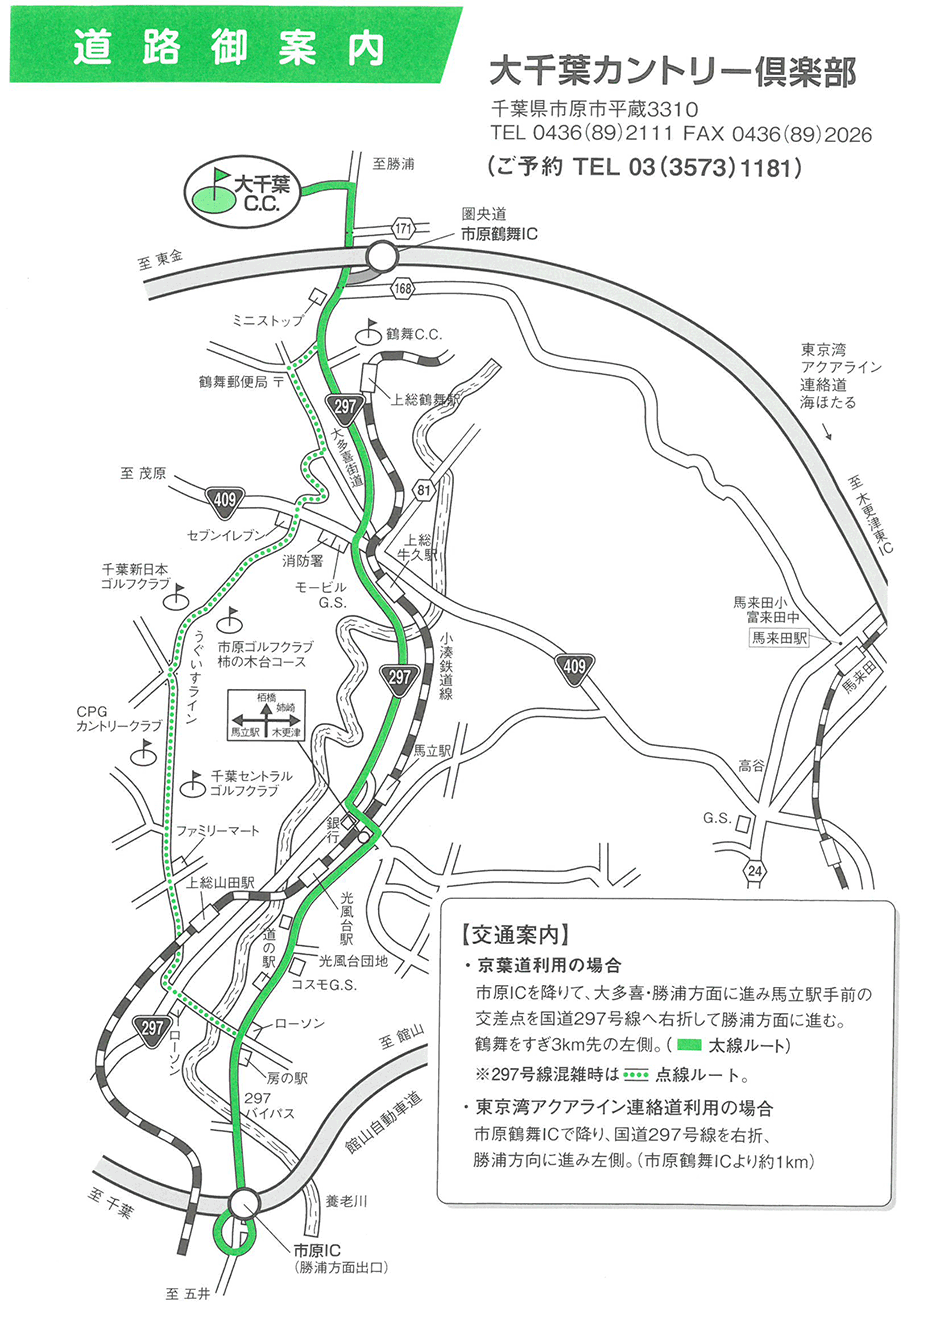 大千葉カントリー倶楽部のアクセス地図